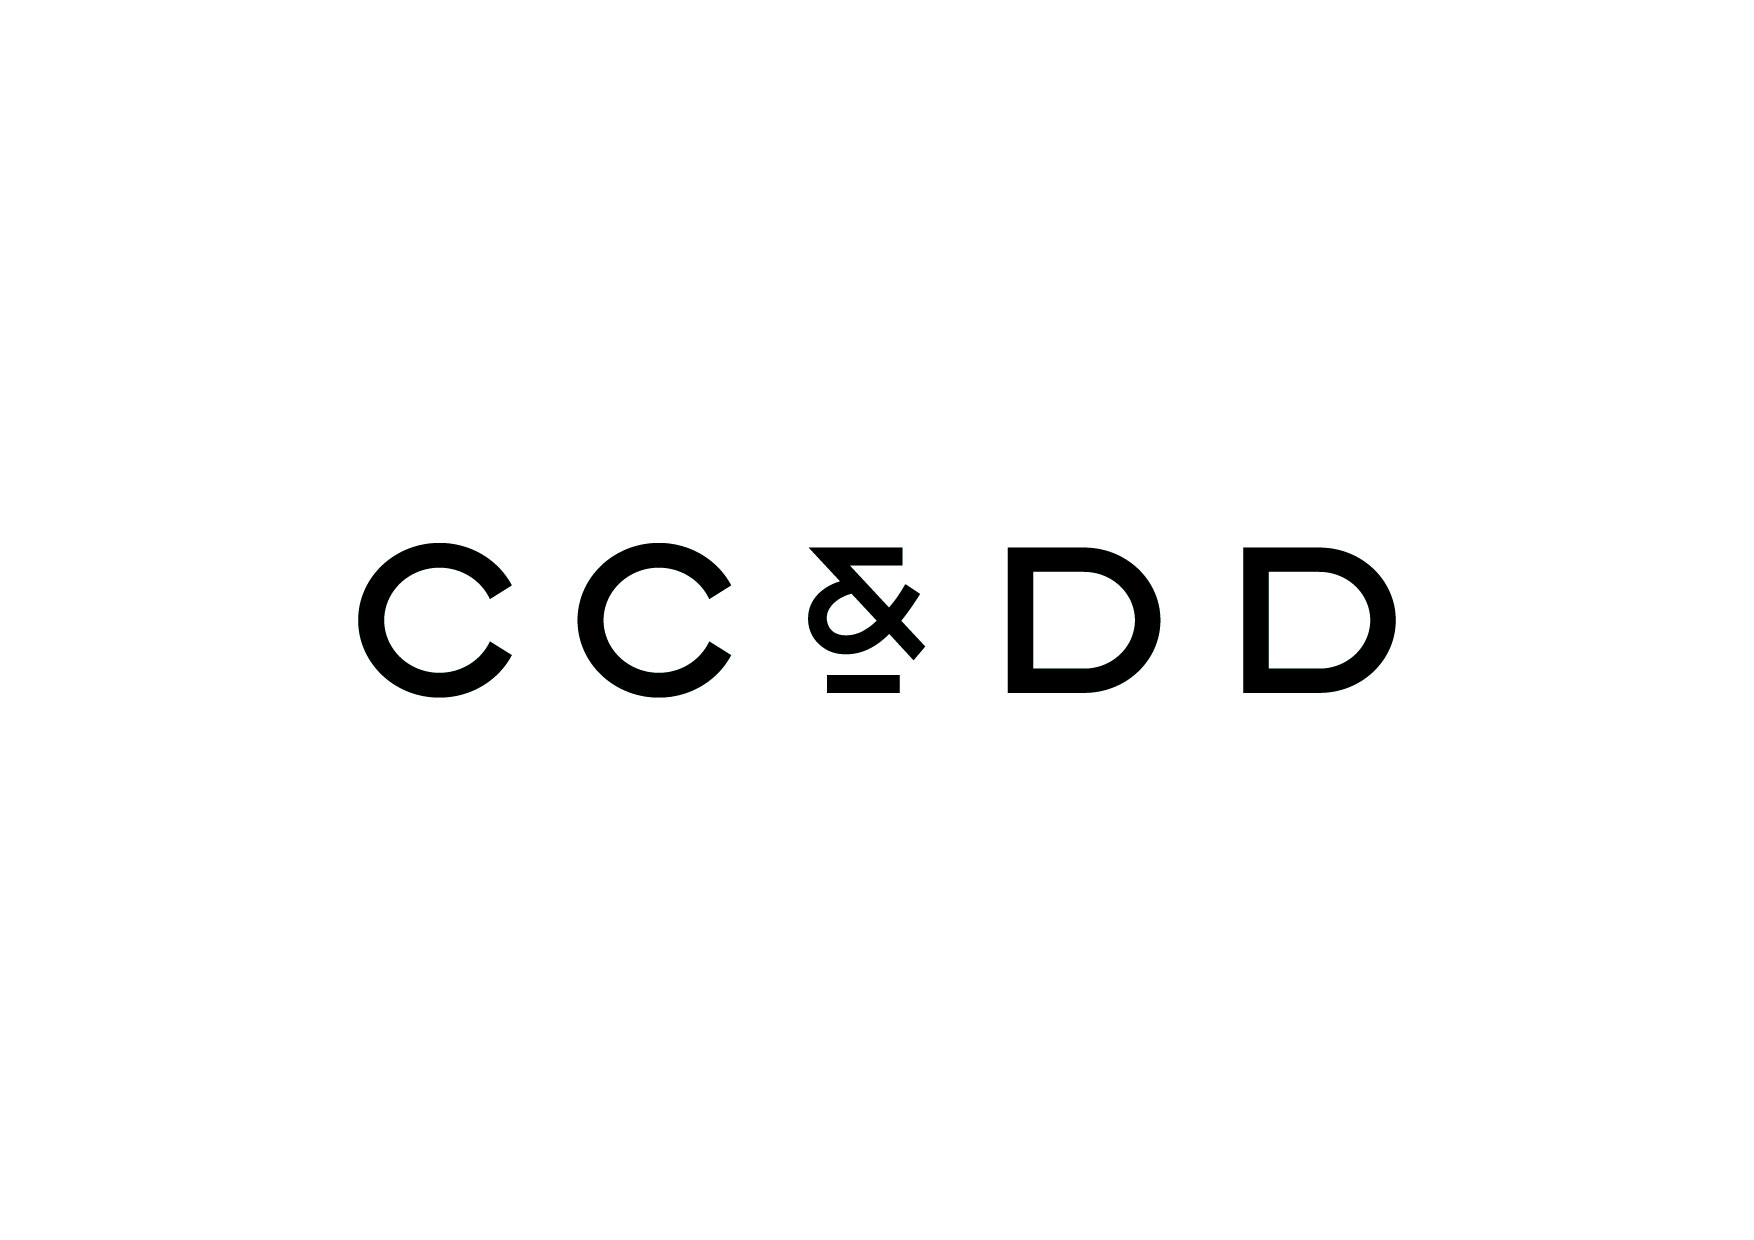 CC&DD